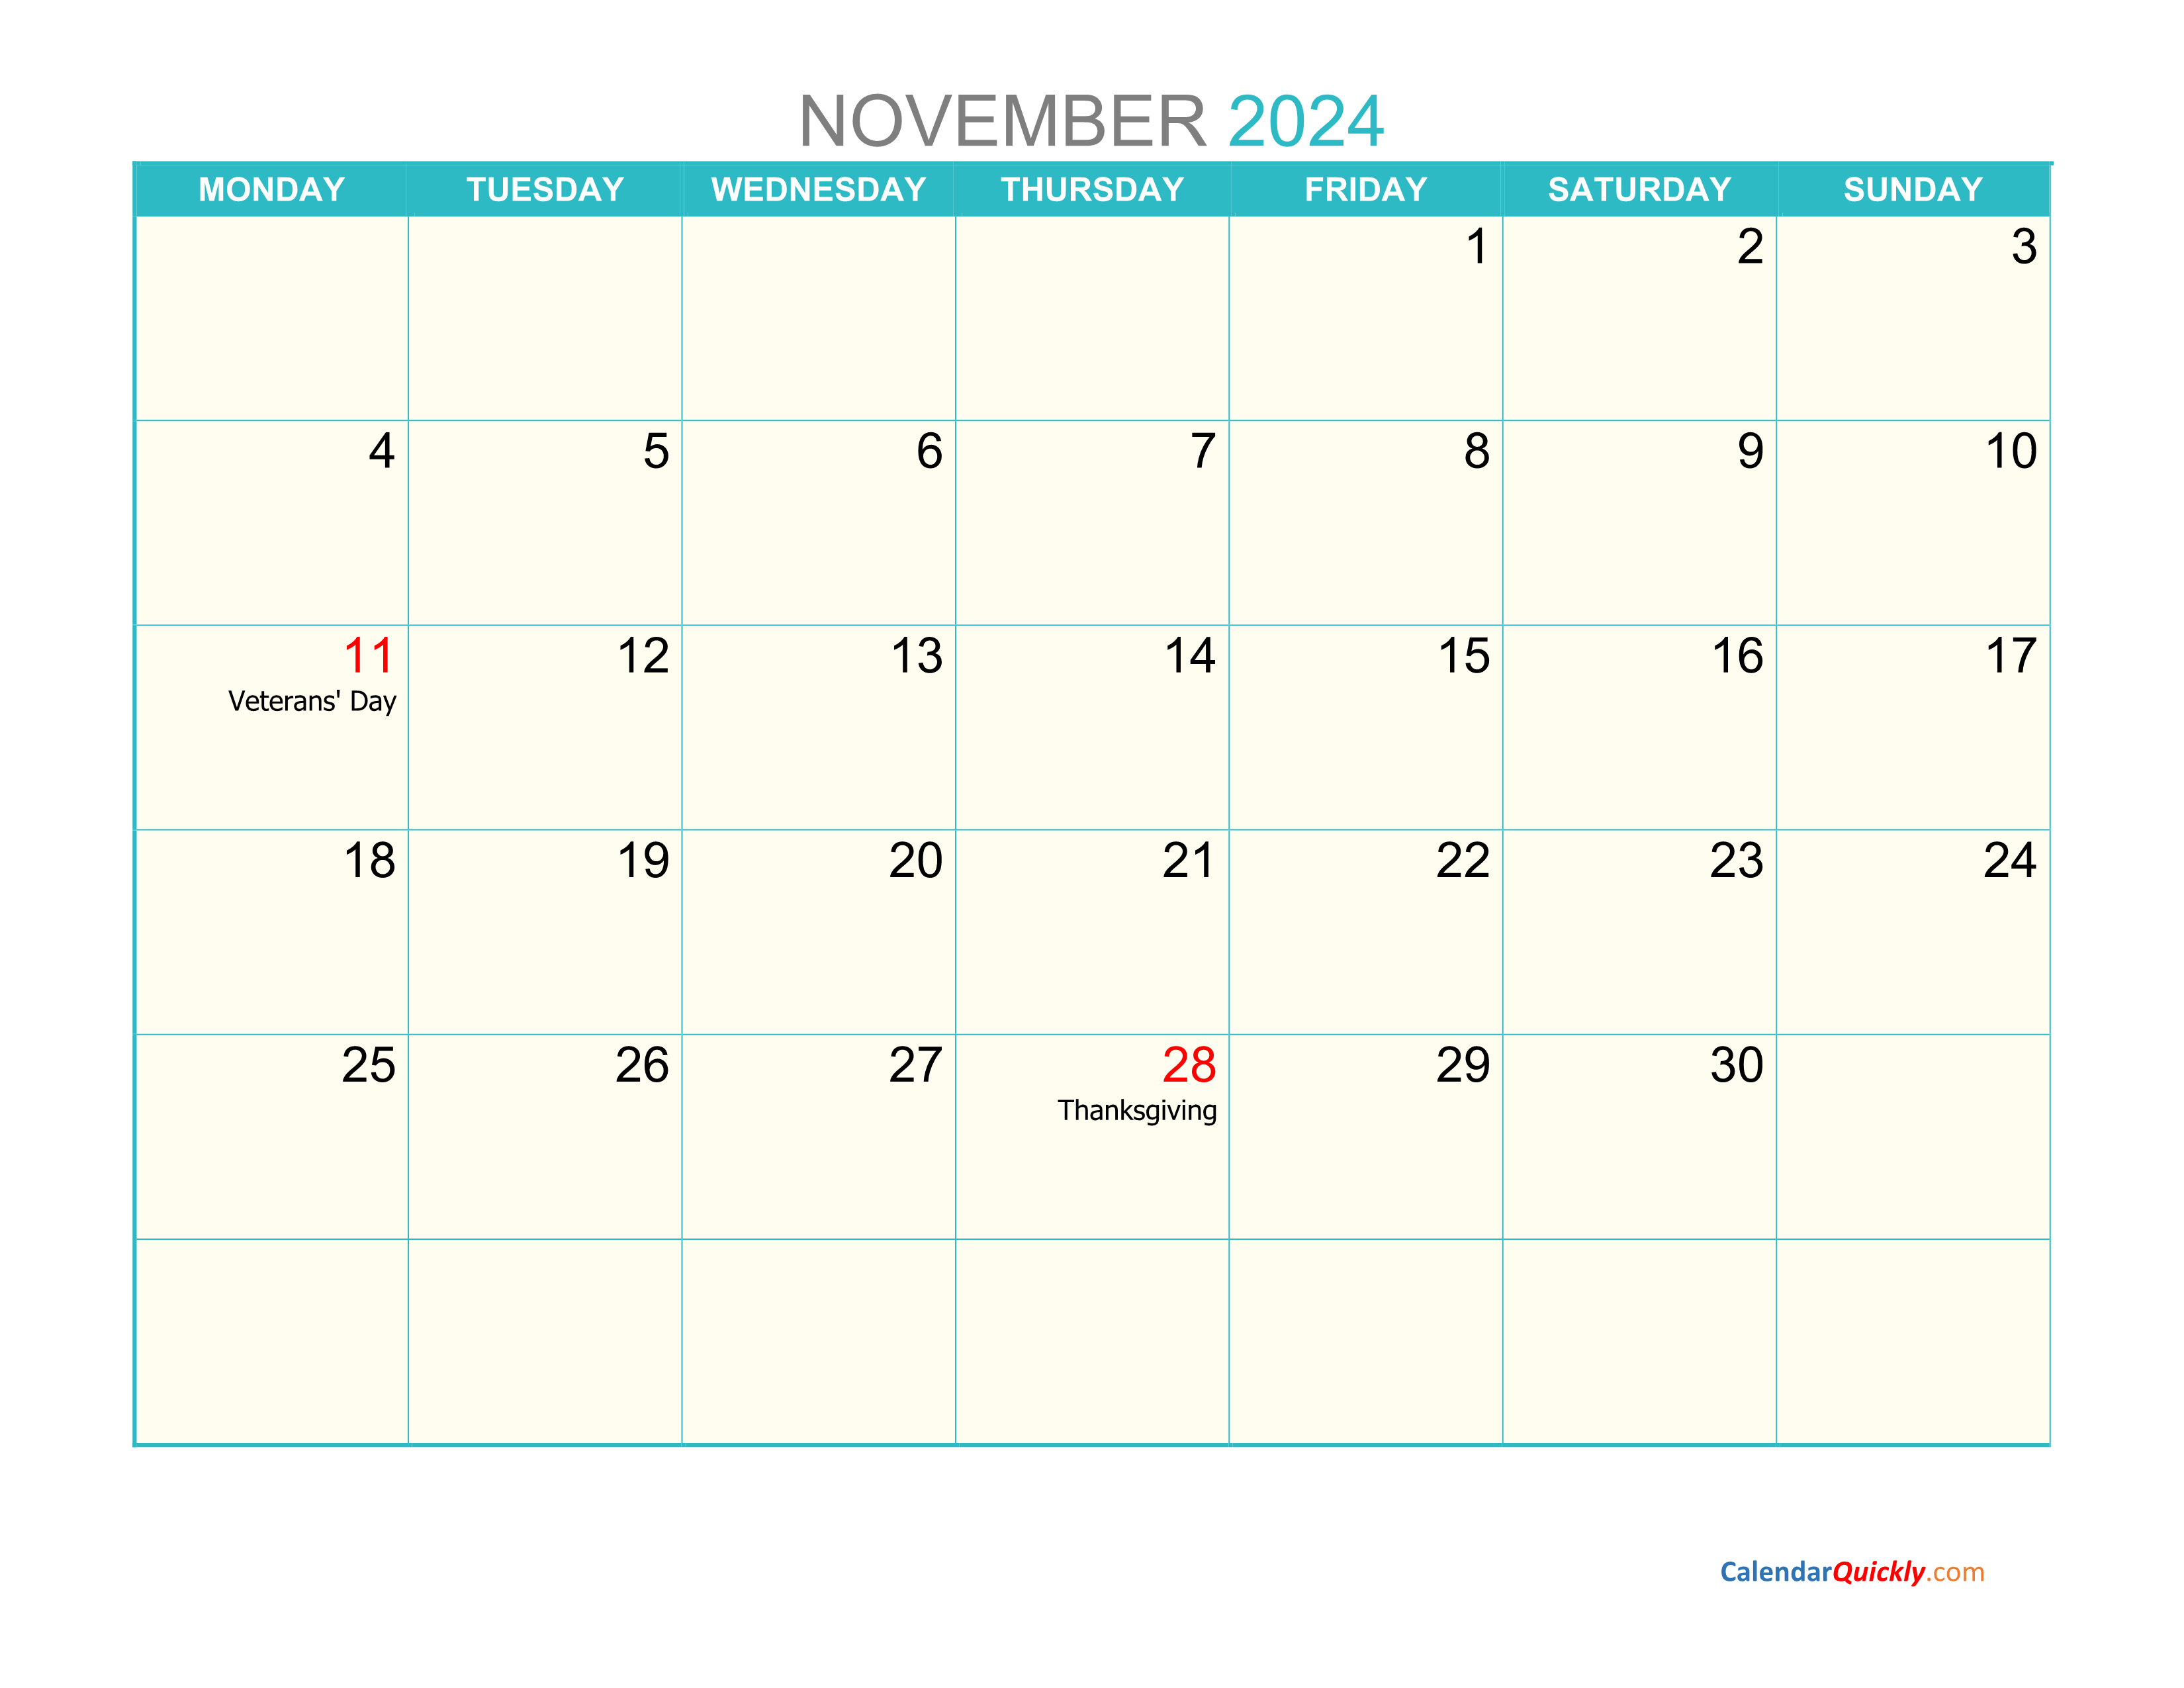 November Calendar 2024 Printable Calendar Quickly Vrogue